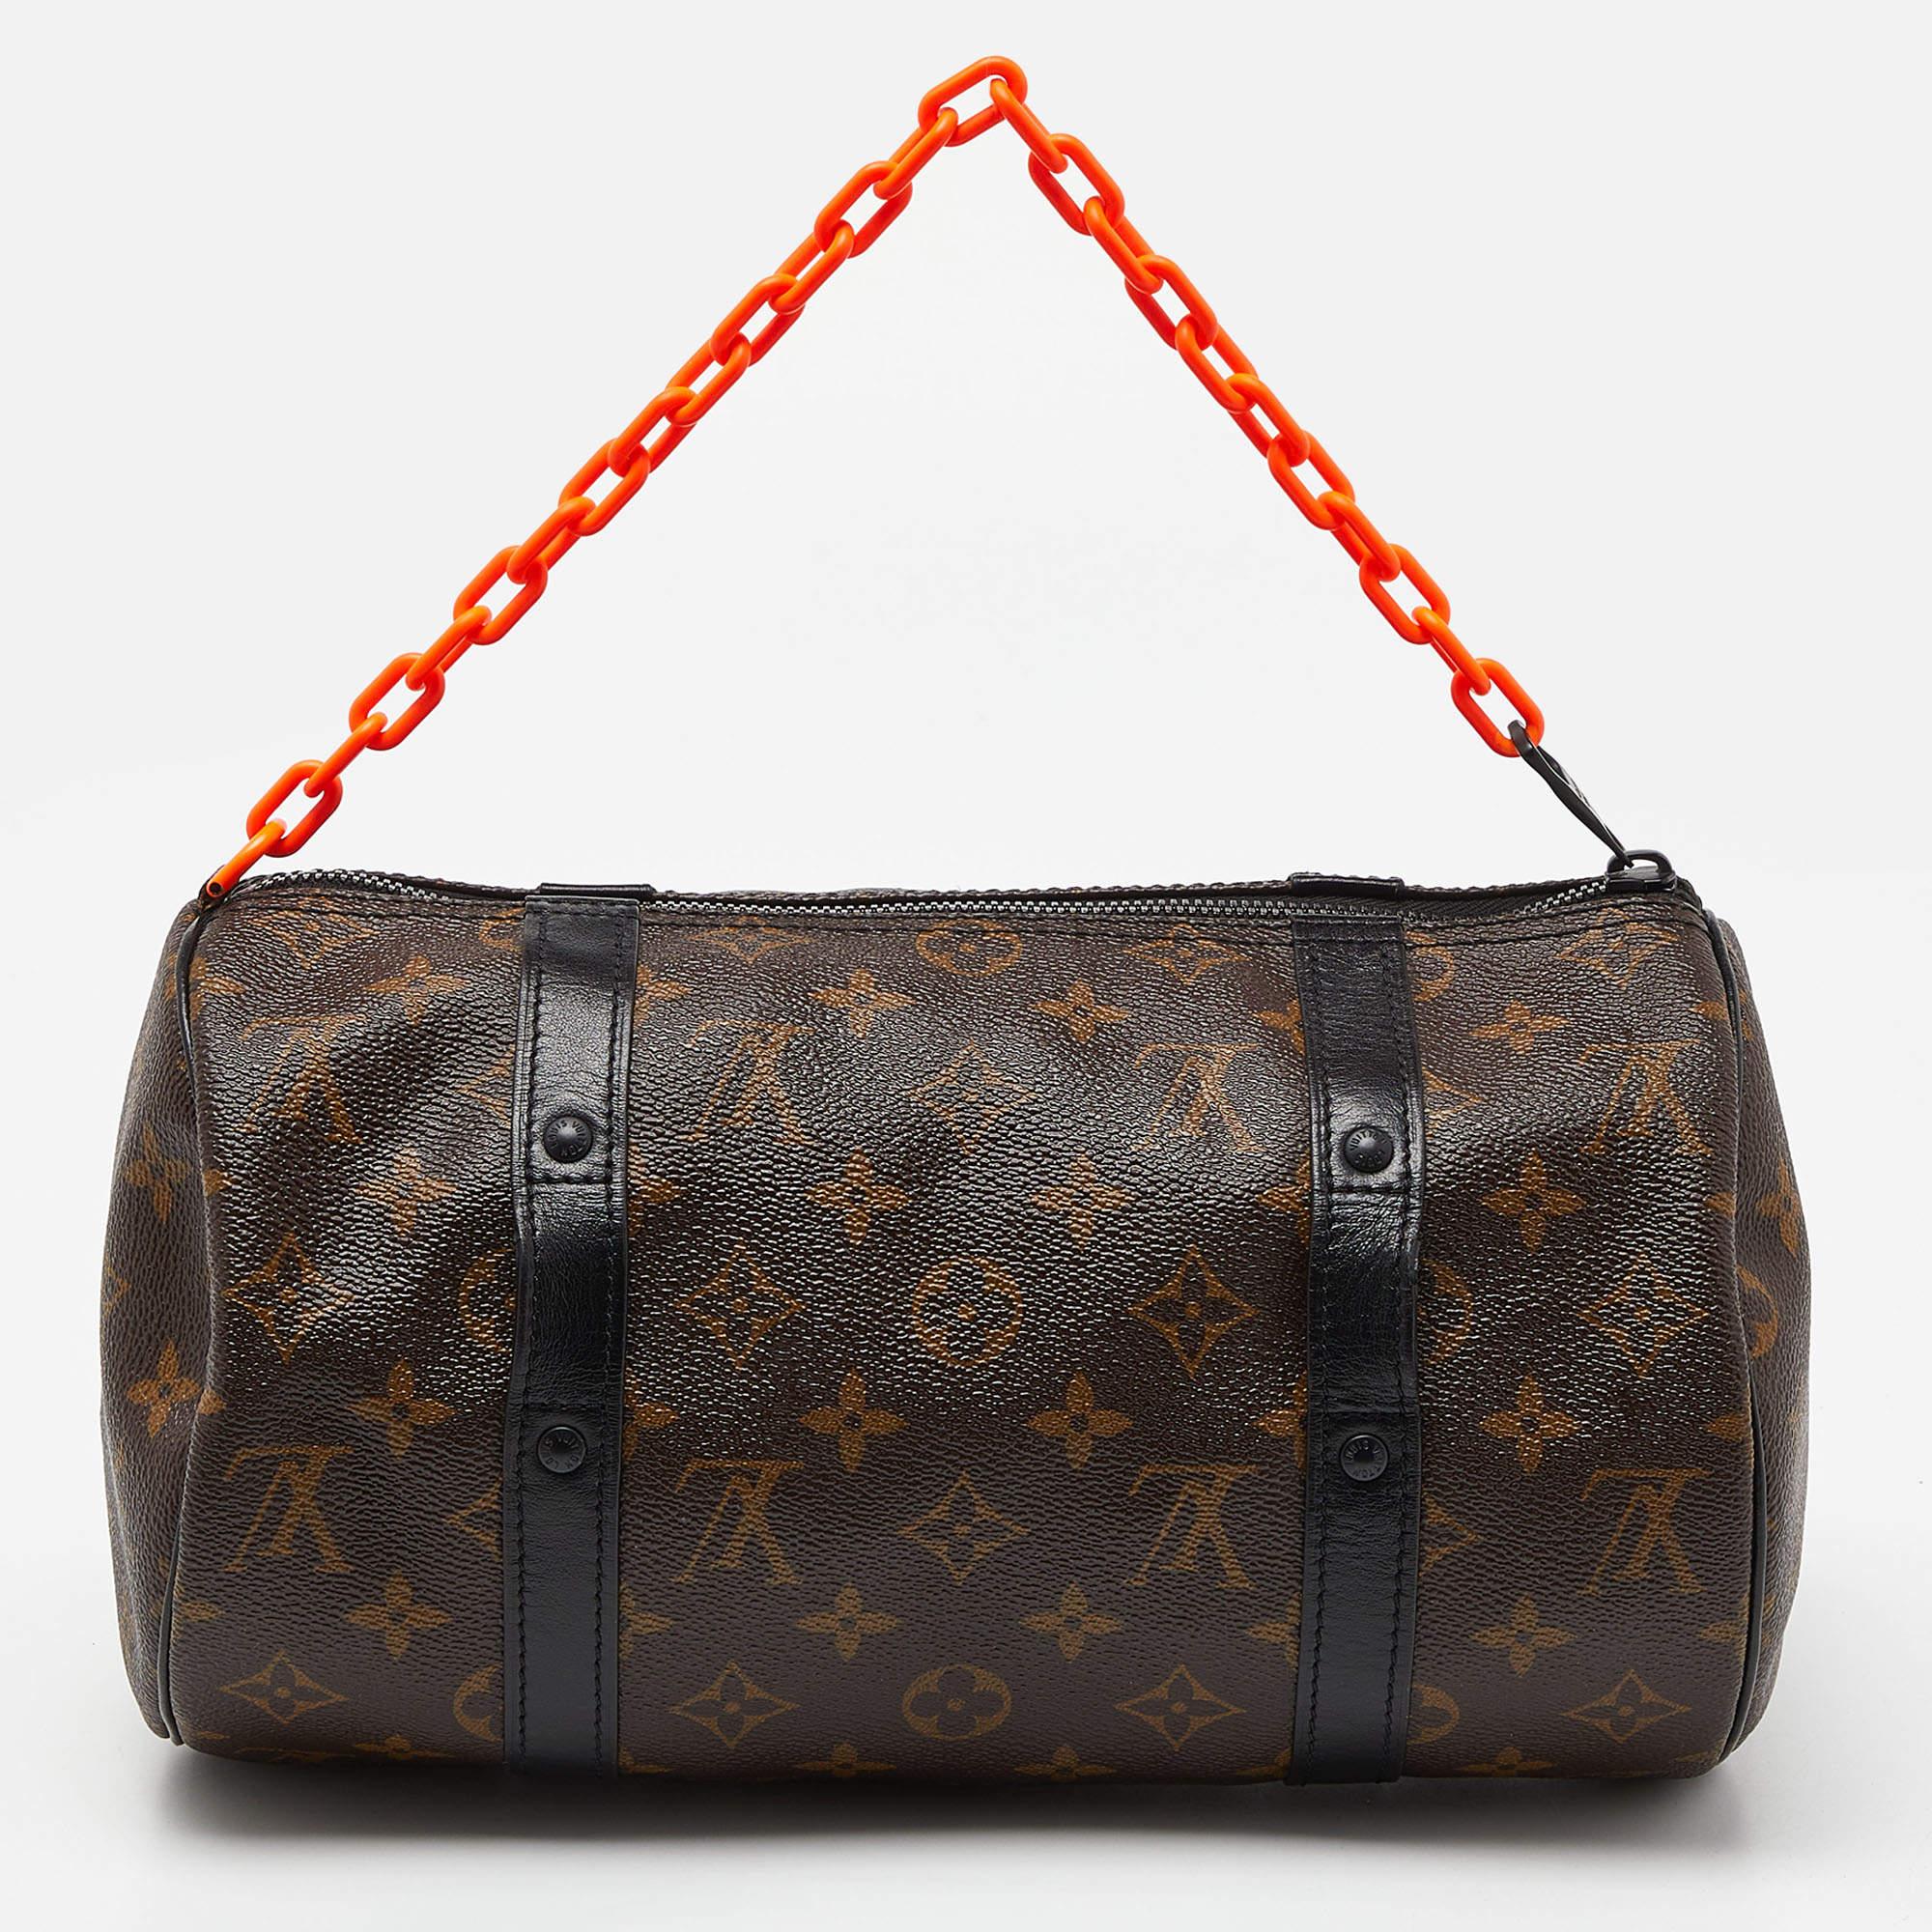 Die Louis Vuitton Papillon Bag ist ein luxuriöses und ikonisches Accessoire mit dem für die Marke charakteristischen Monogramm aus Canvas und einem orangefarbenen Gliederband. Diese kompakte Handtasche mit ihrer klassischen, abgerundeten Silhouette,